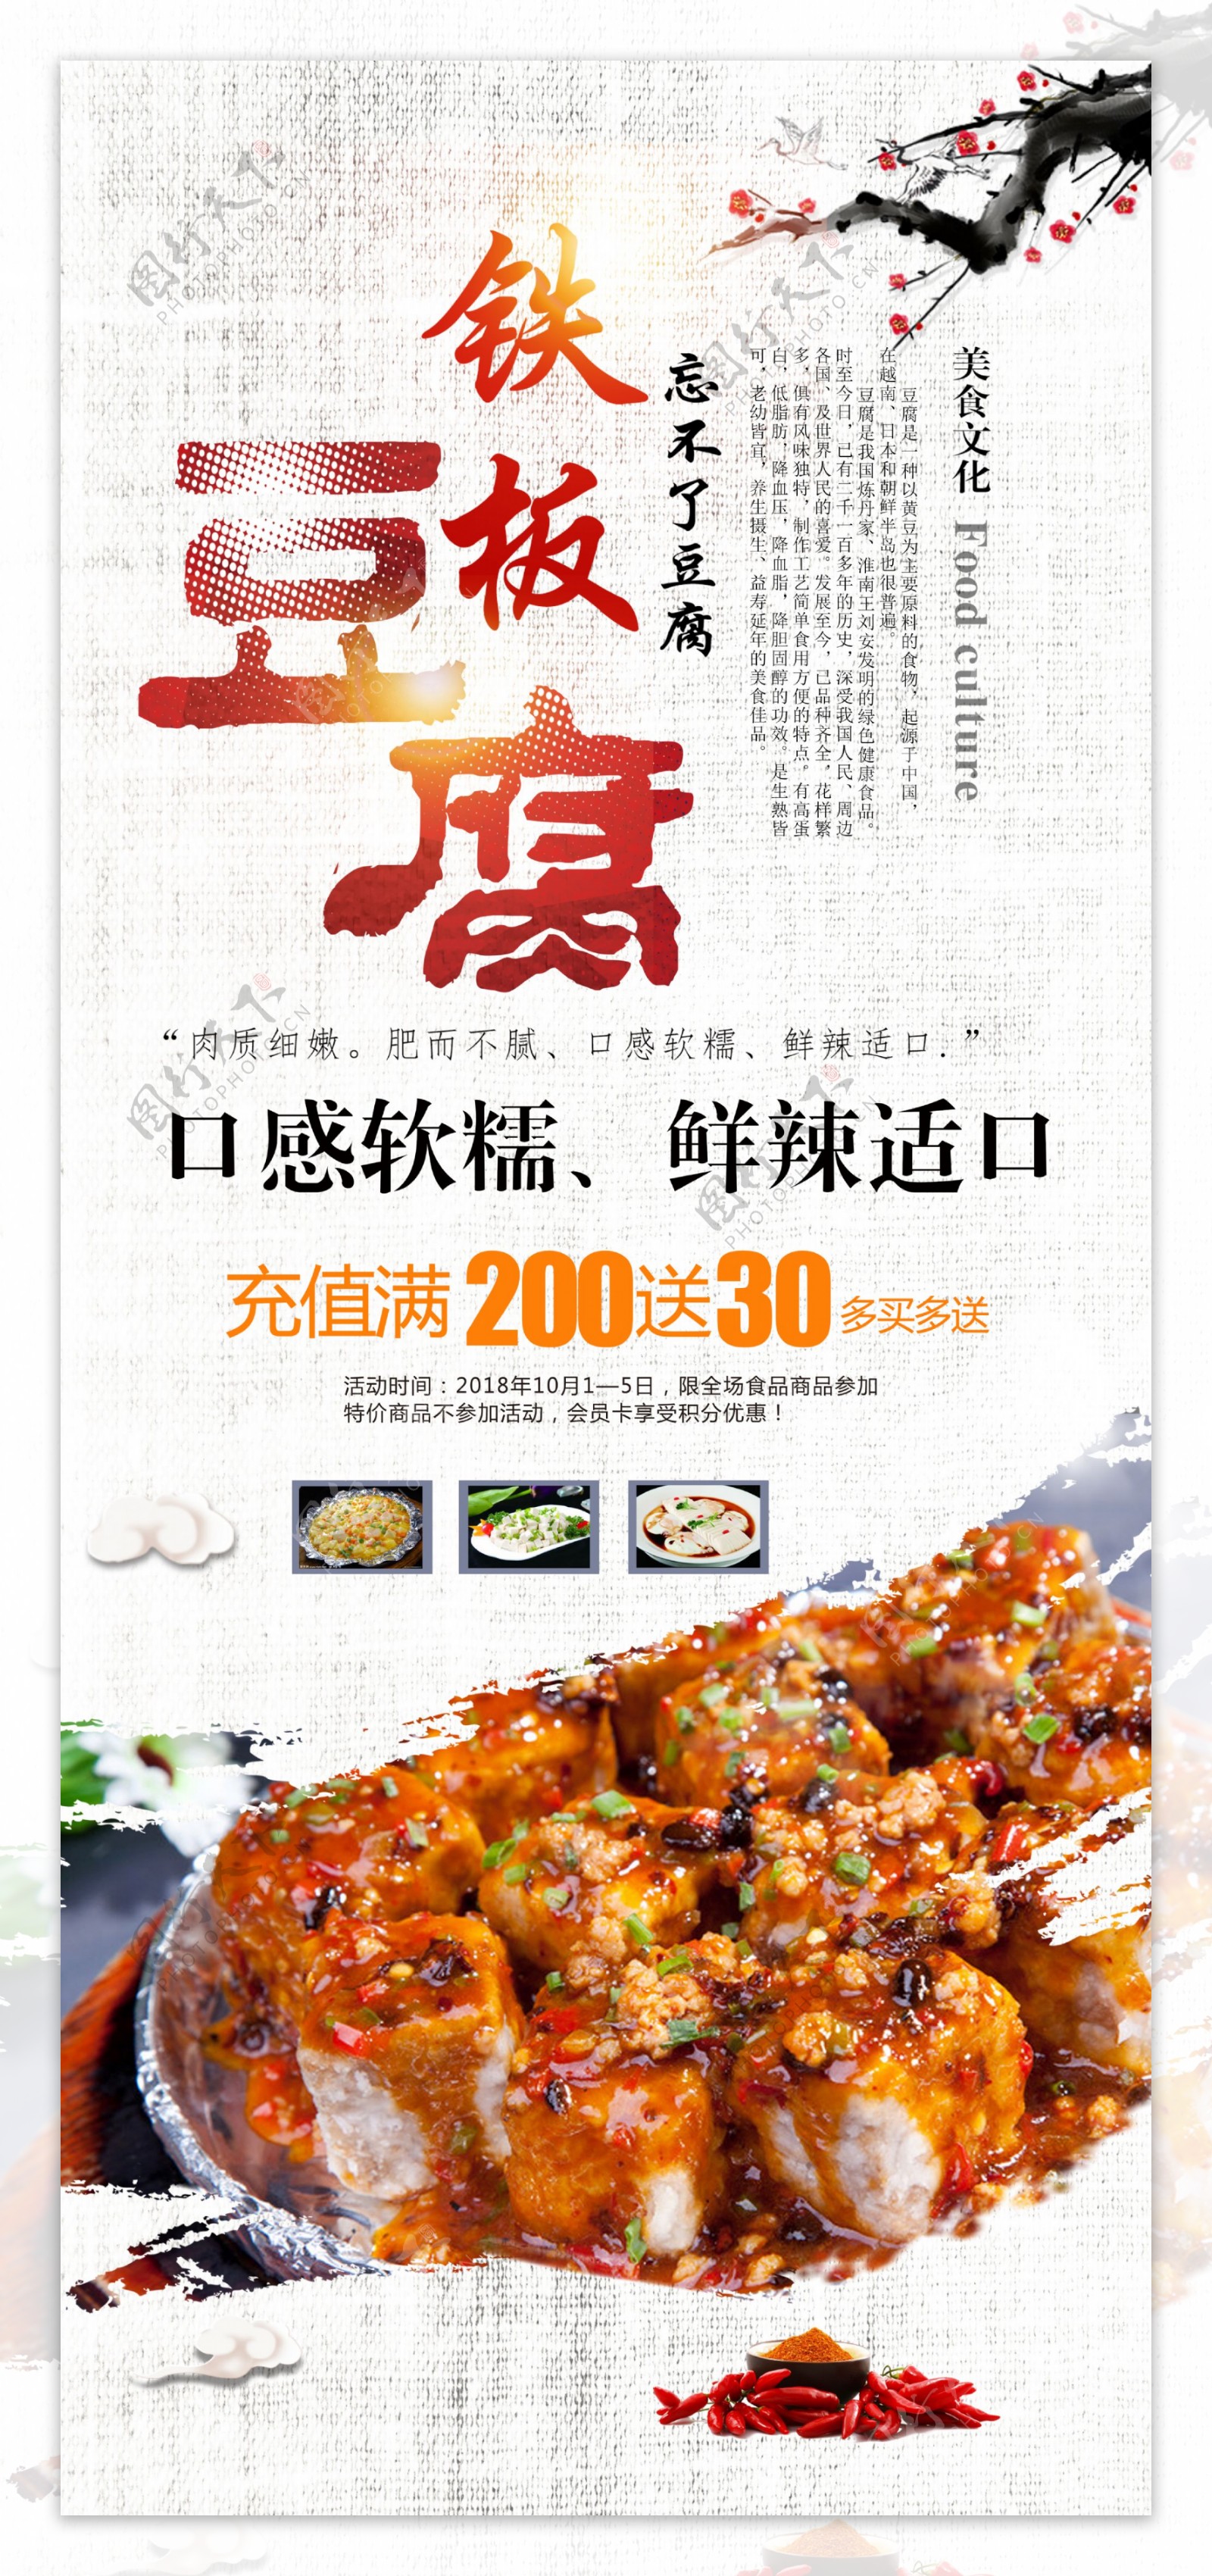 铁板豆腐宣传促销展架设计